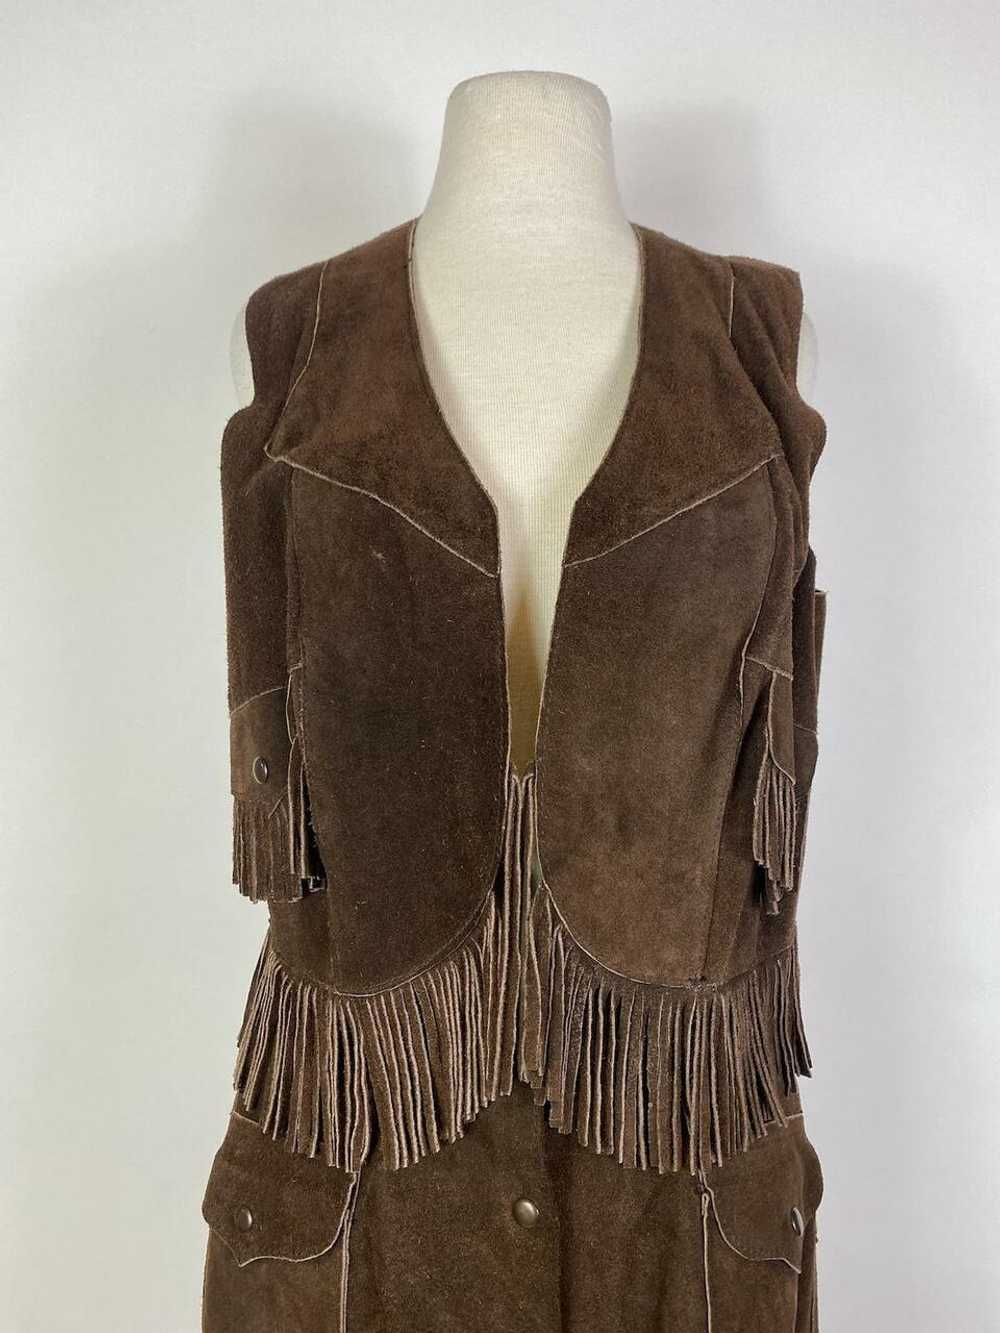 1970s Suede Leather Fringe Vest and Skirt Set - image 2